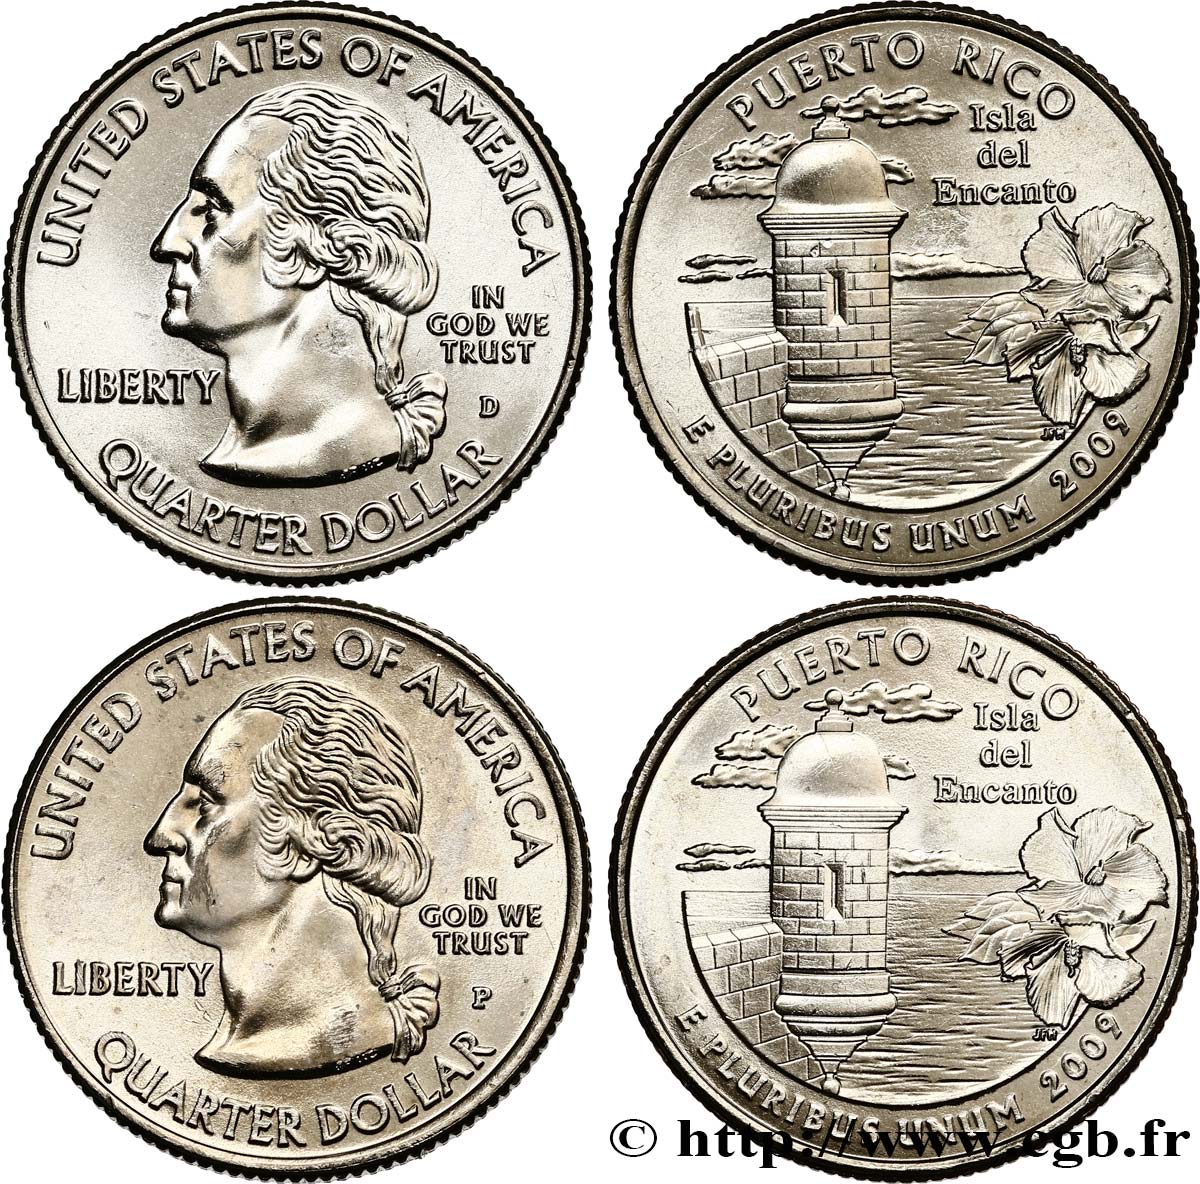 ÉTATS-UNIS D AMÉRIQUE Lot de 2 monnaies 1/4 Dollar Commonwealth de Puerto Rico 2009 Philadelphie + Denver SPL 